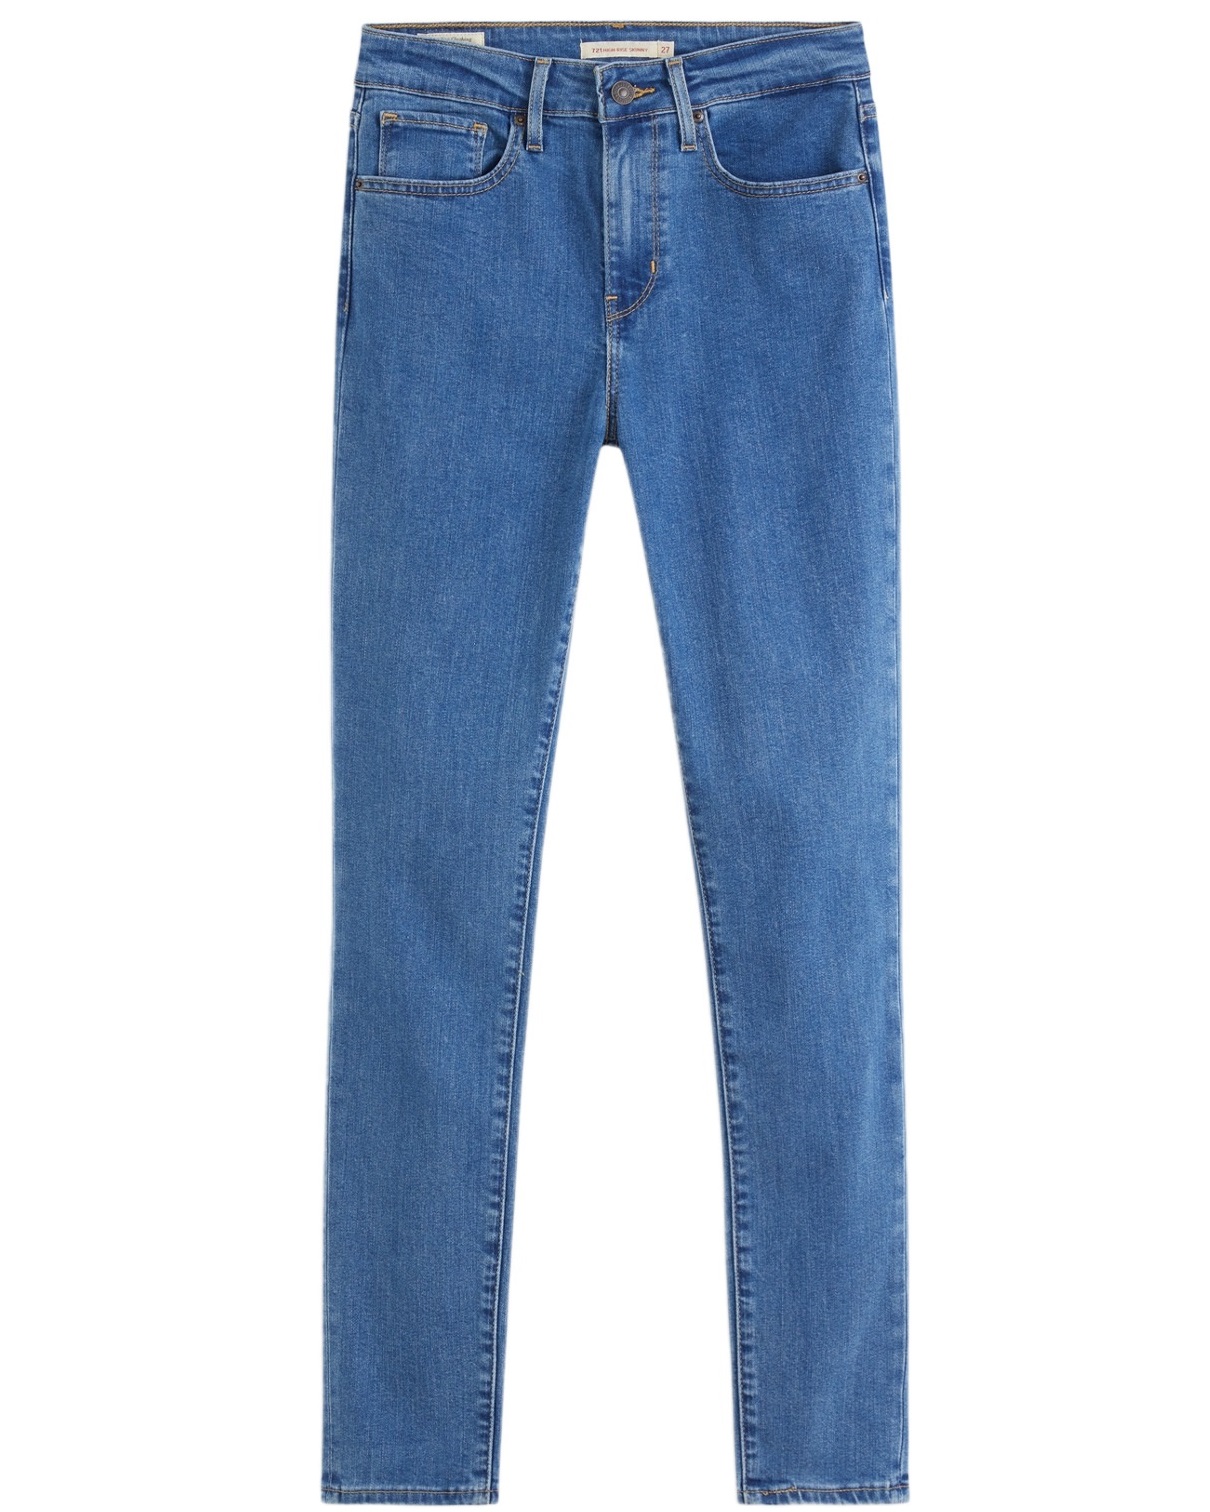 Джинсы женские Levi's 721 High Rise Skinny Jeans синие 48-50